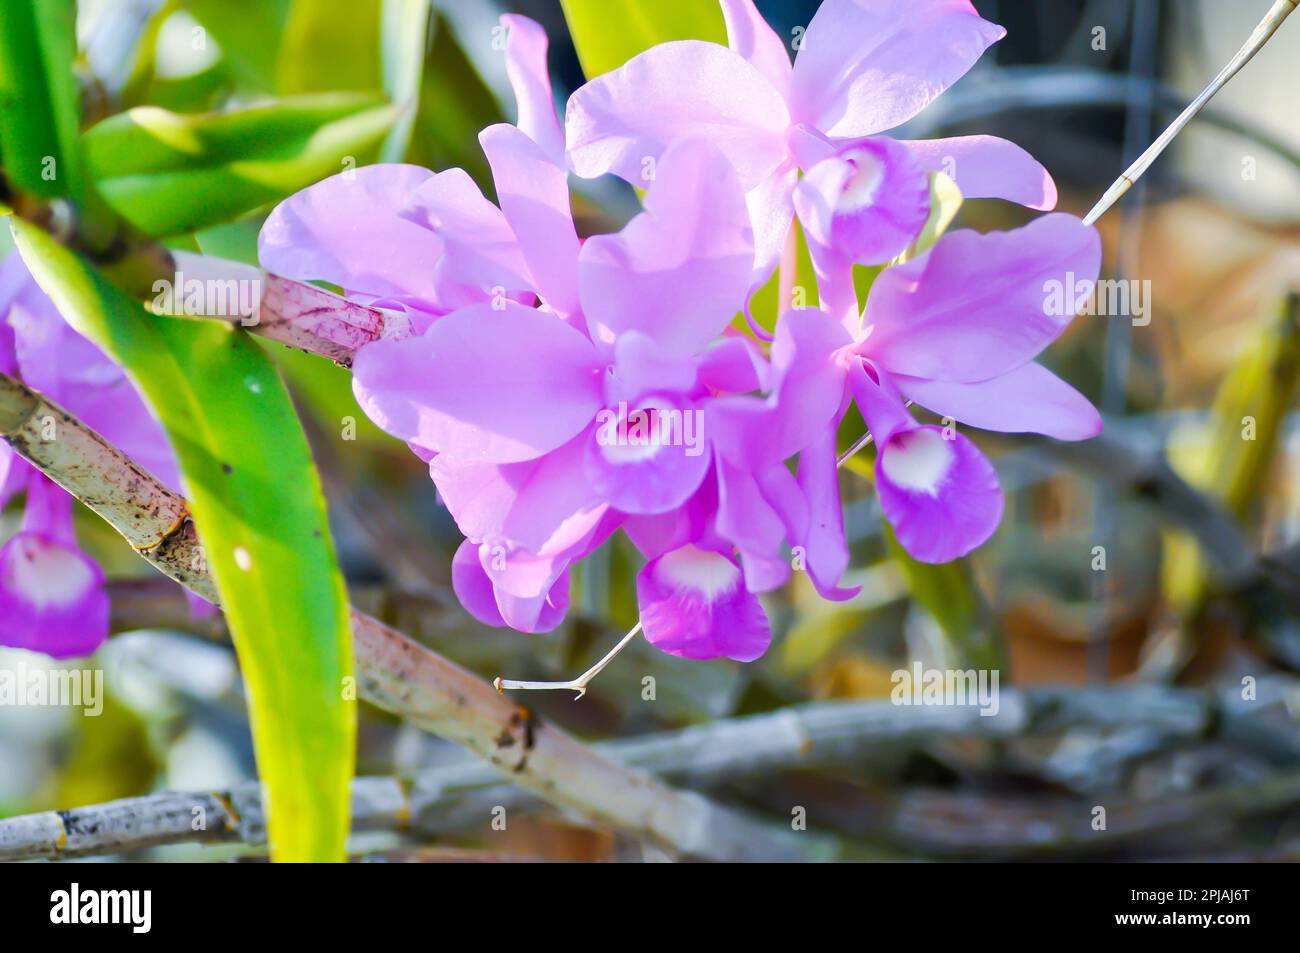 Guarianthe skinneri or chidaceae or purple orchid , cattleya skinneri flowers Stock Photo